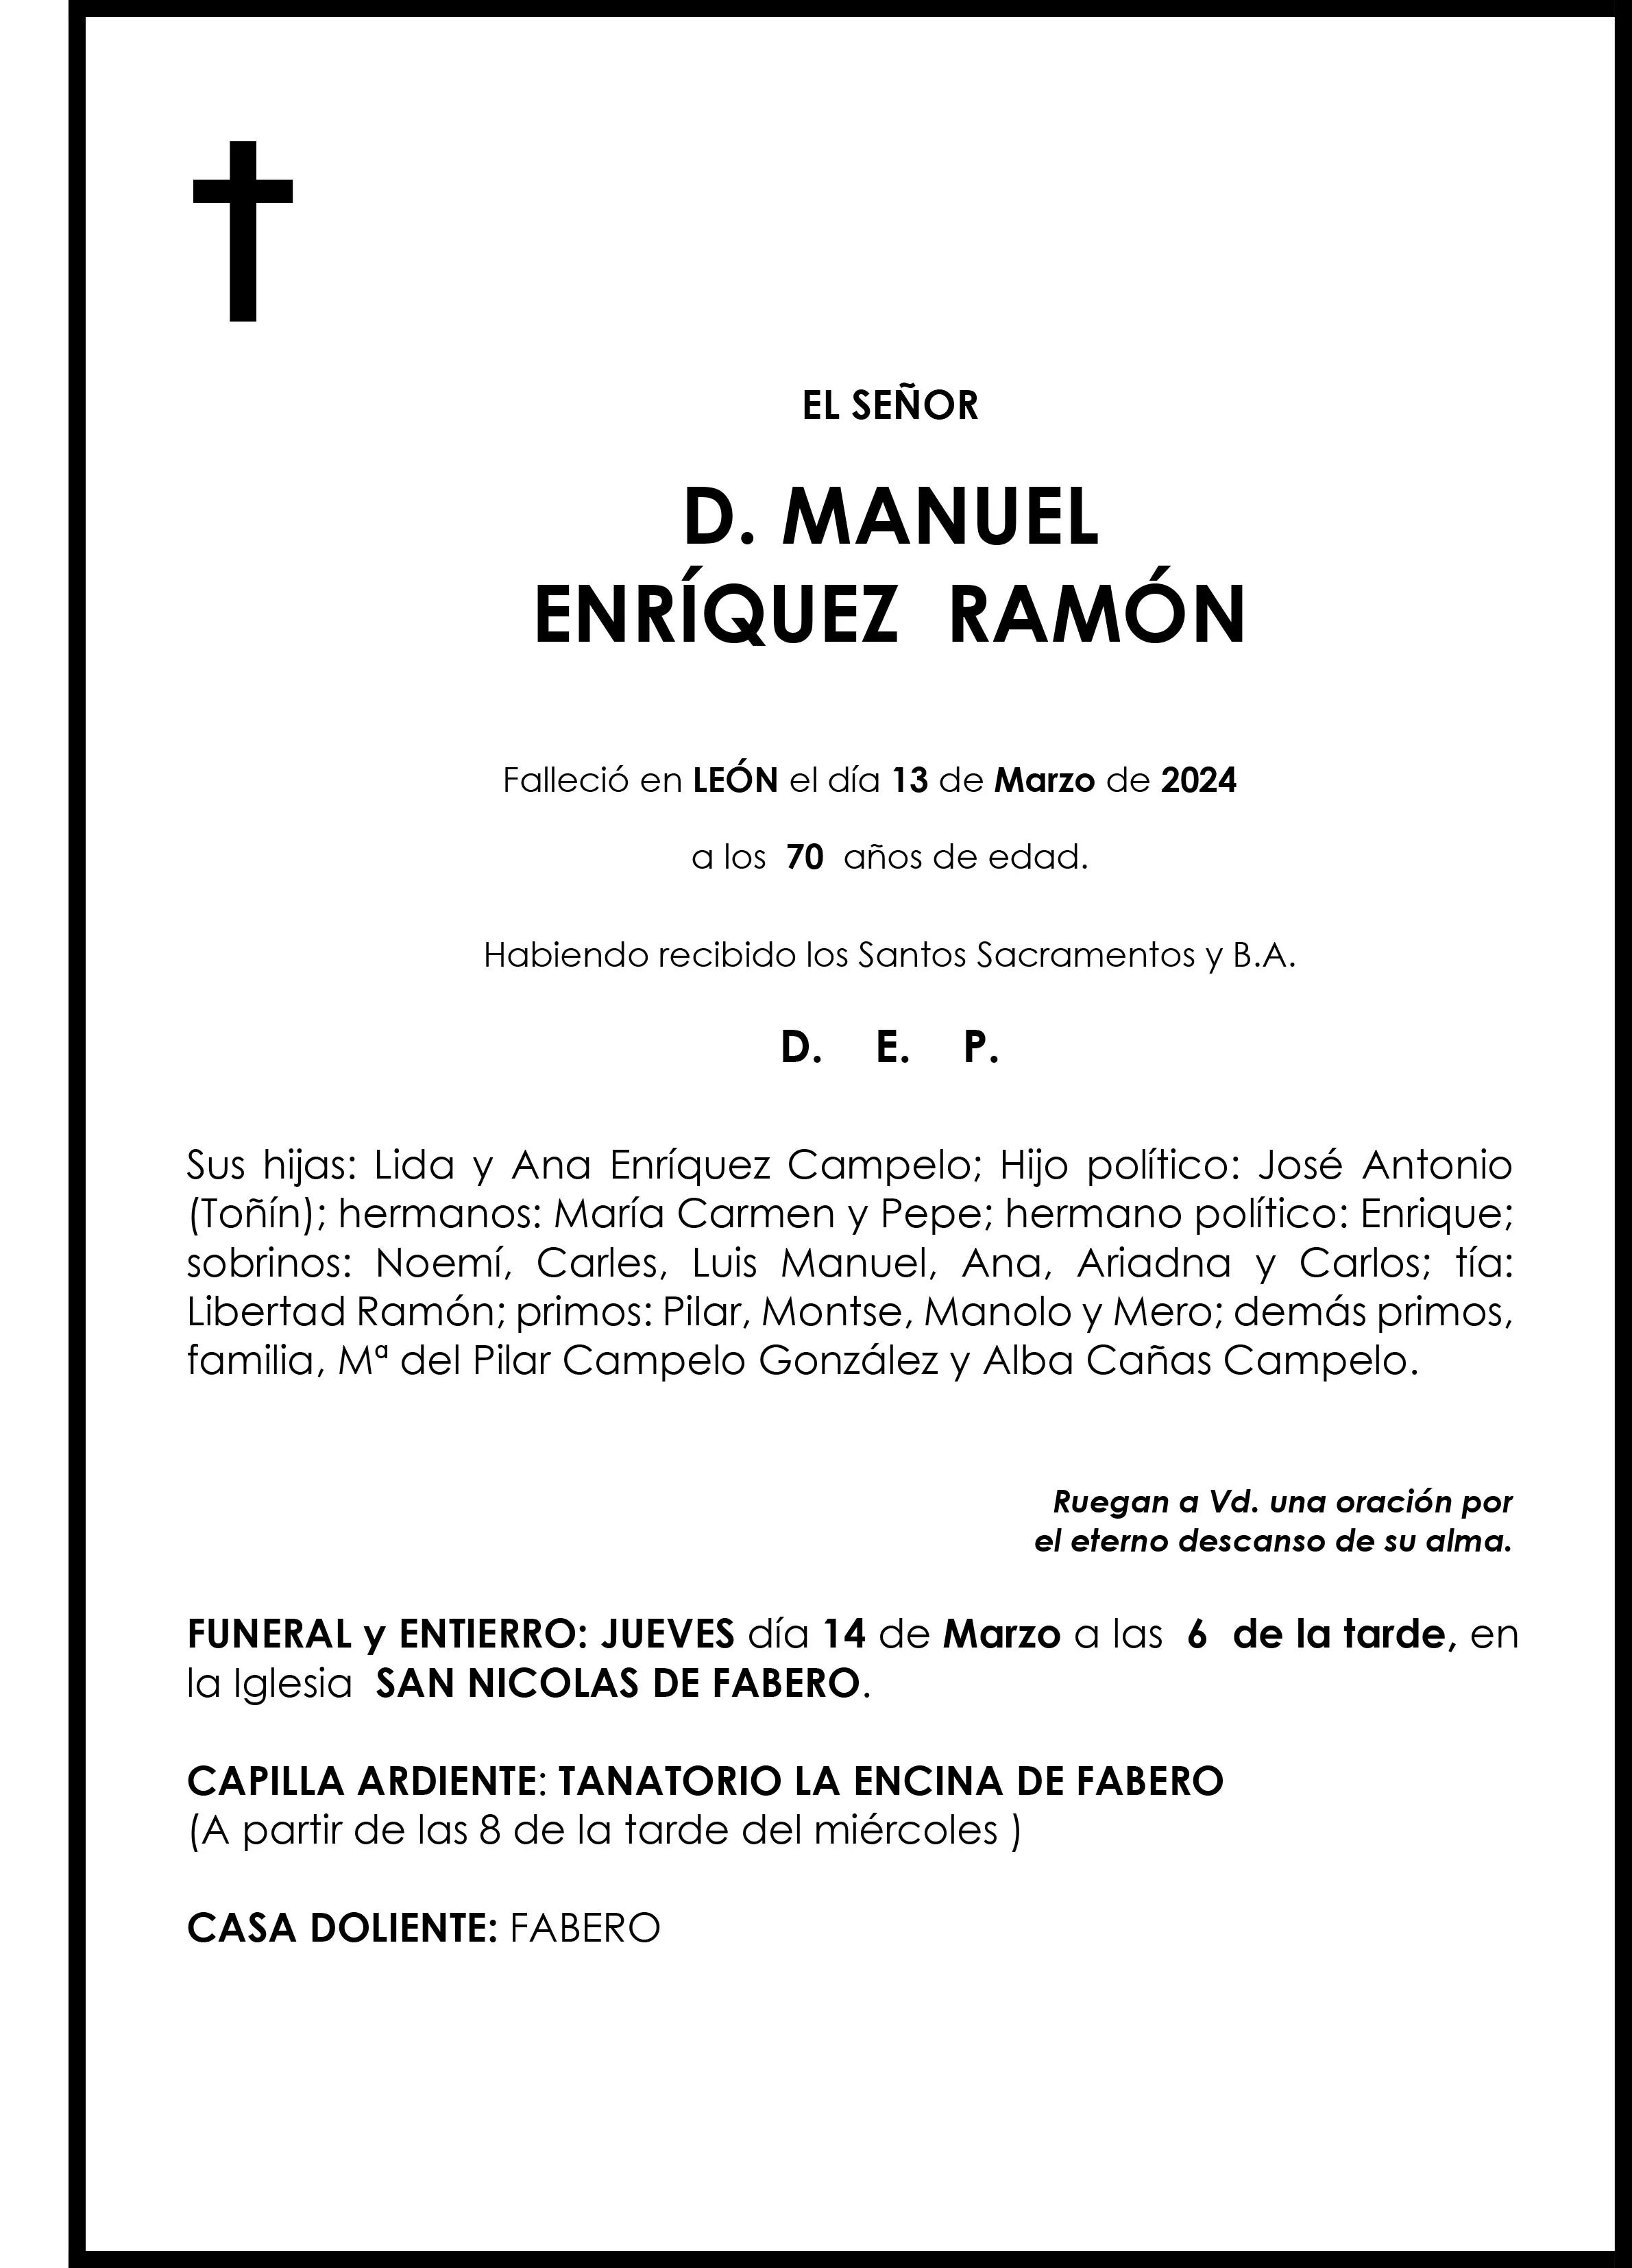 MANUEL ENRIQUEZ RAMON